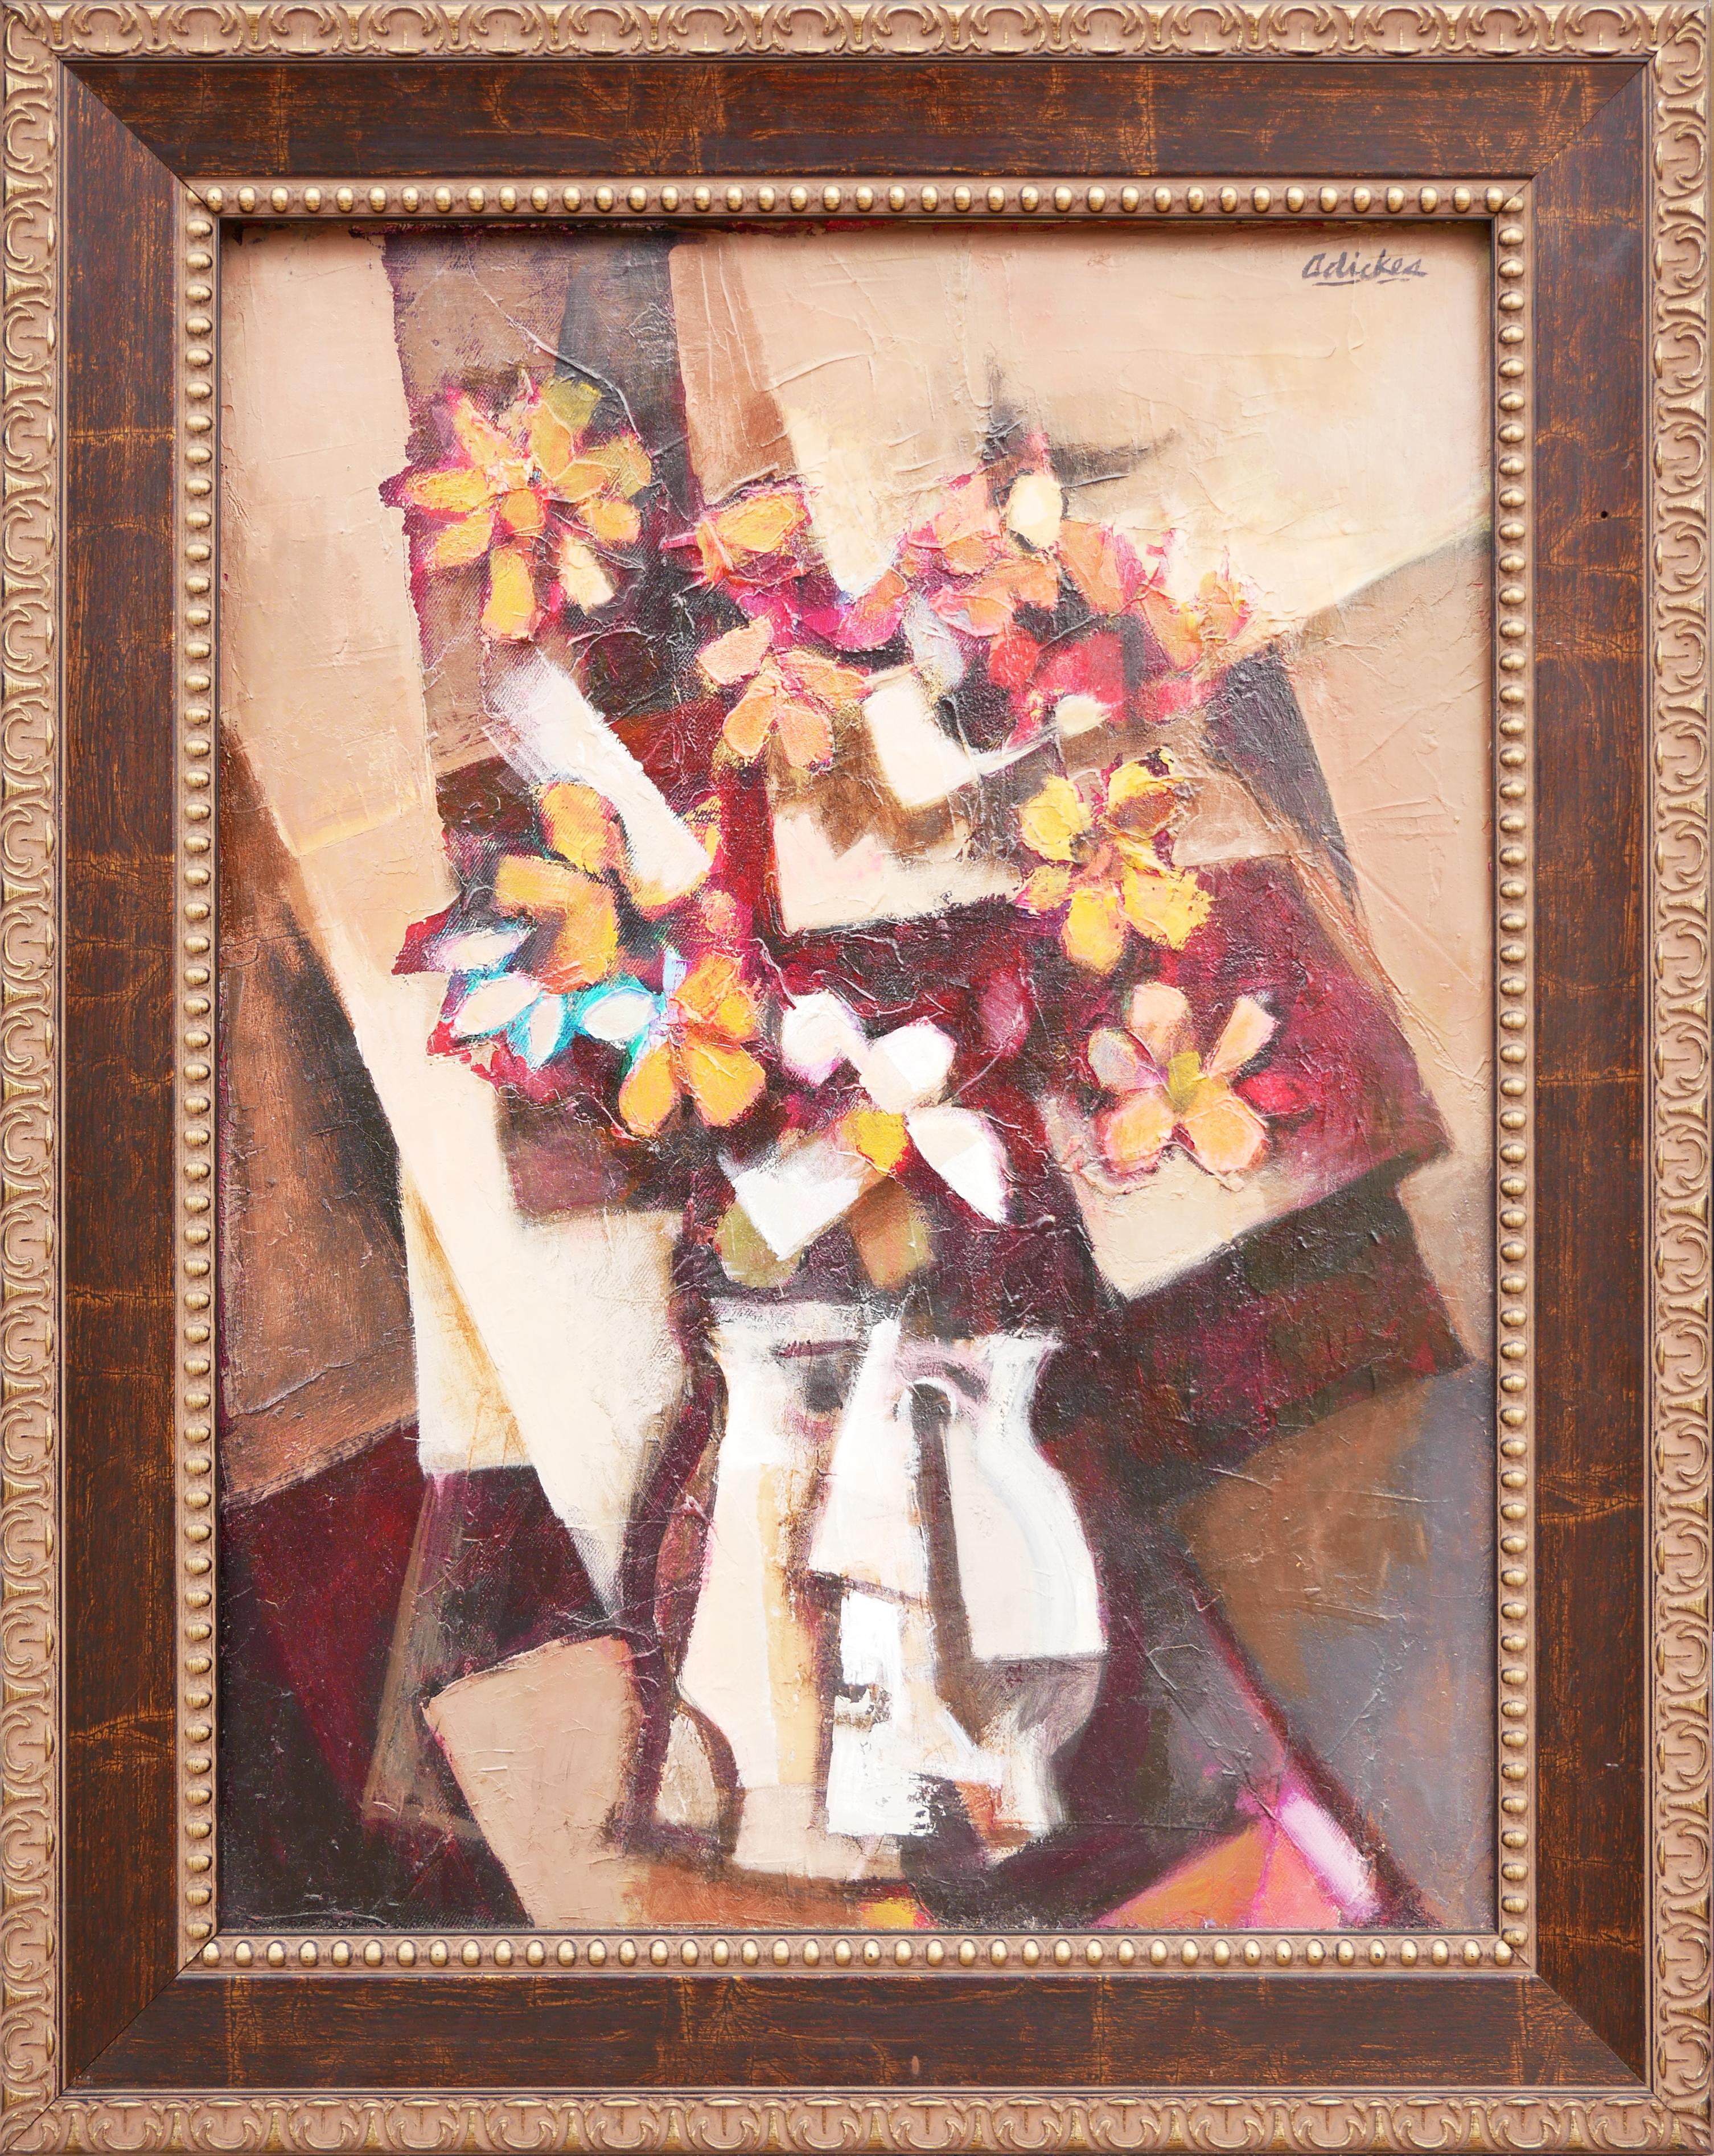 David Adickes Abstract Painting – „Blumenstrauß, seltsame Vase“, warm getöntes abstraktes kubistisches Blumenstillleben